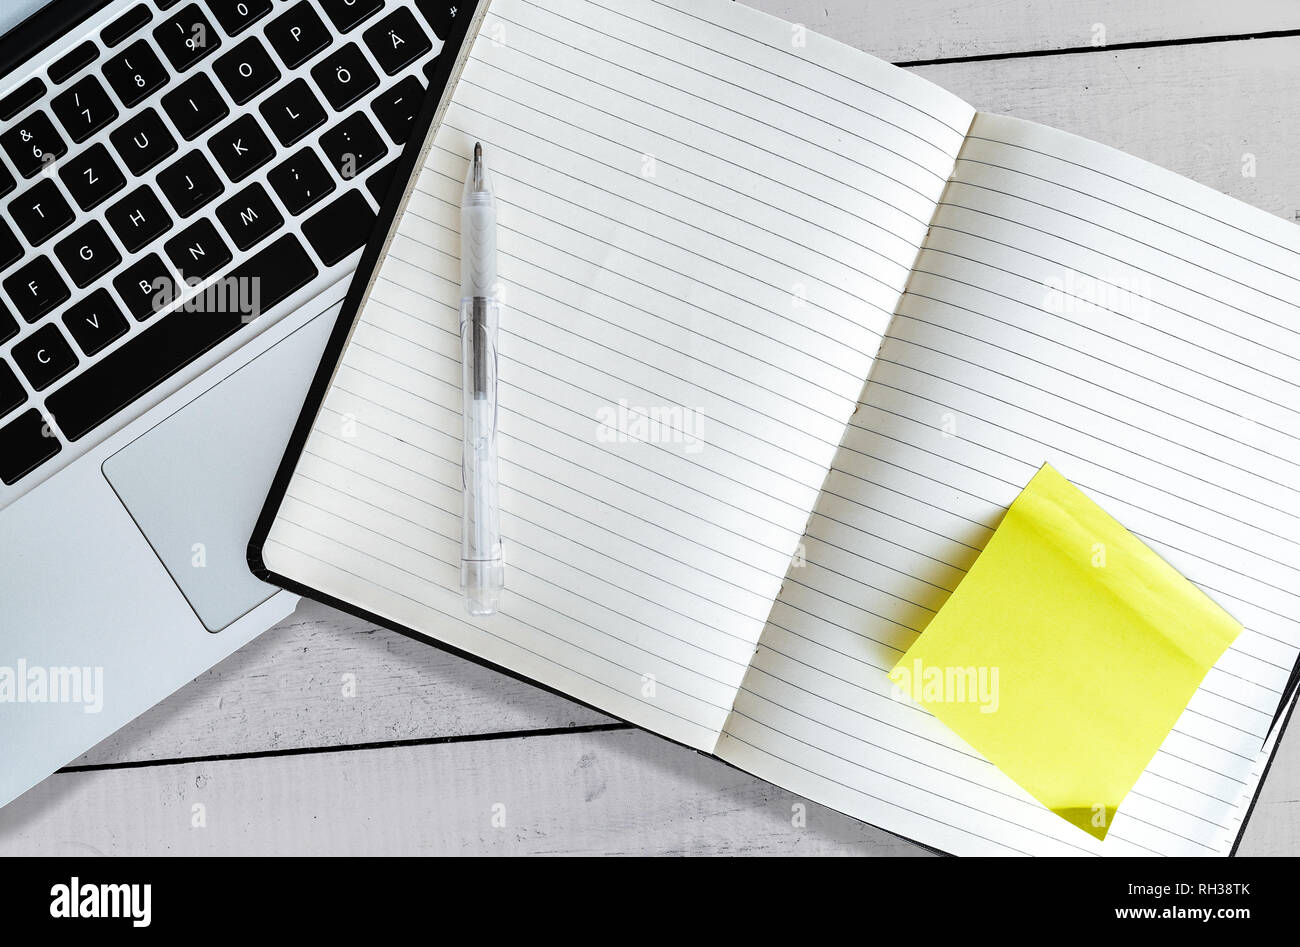 Leer, öffnen Sie die Anwendung "Notizen" mit gelben Haftnotiz neben Laptop auf weiße Holztisch Stockfoto